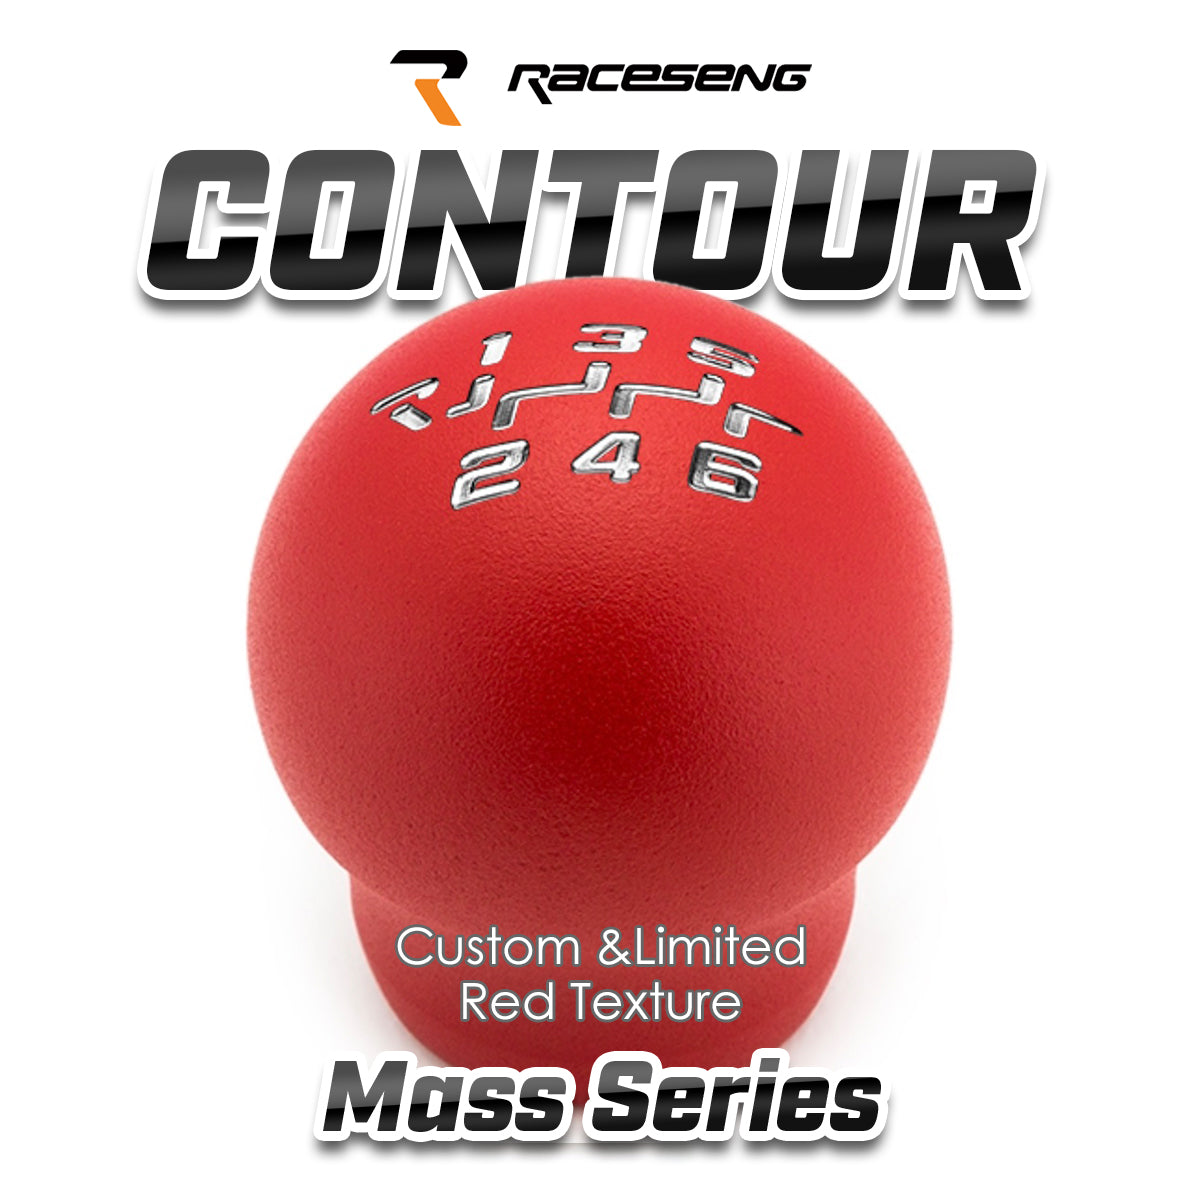 RACESENG レースセングシフトノブ MASSシリーズ CONTOUR コンツアー カスタムカラー・限定カラー